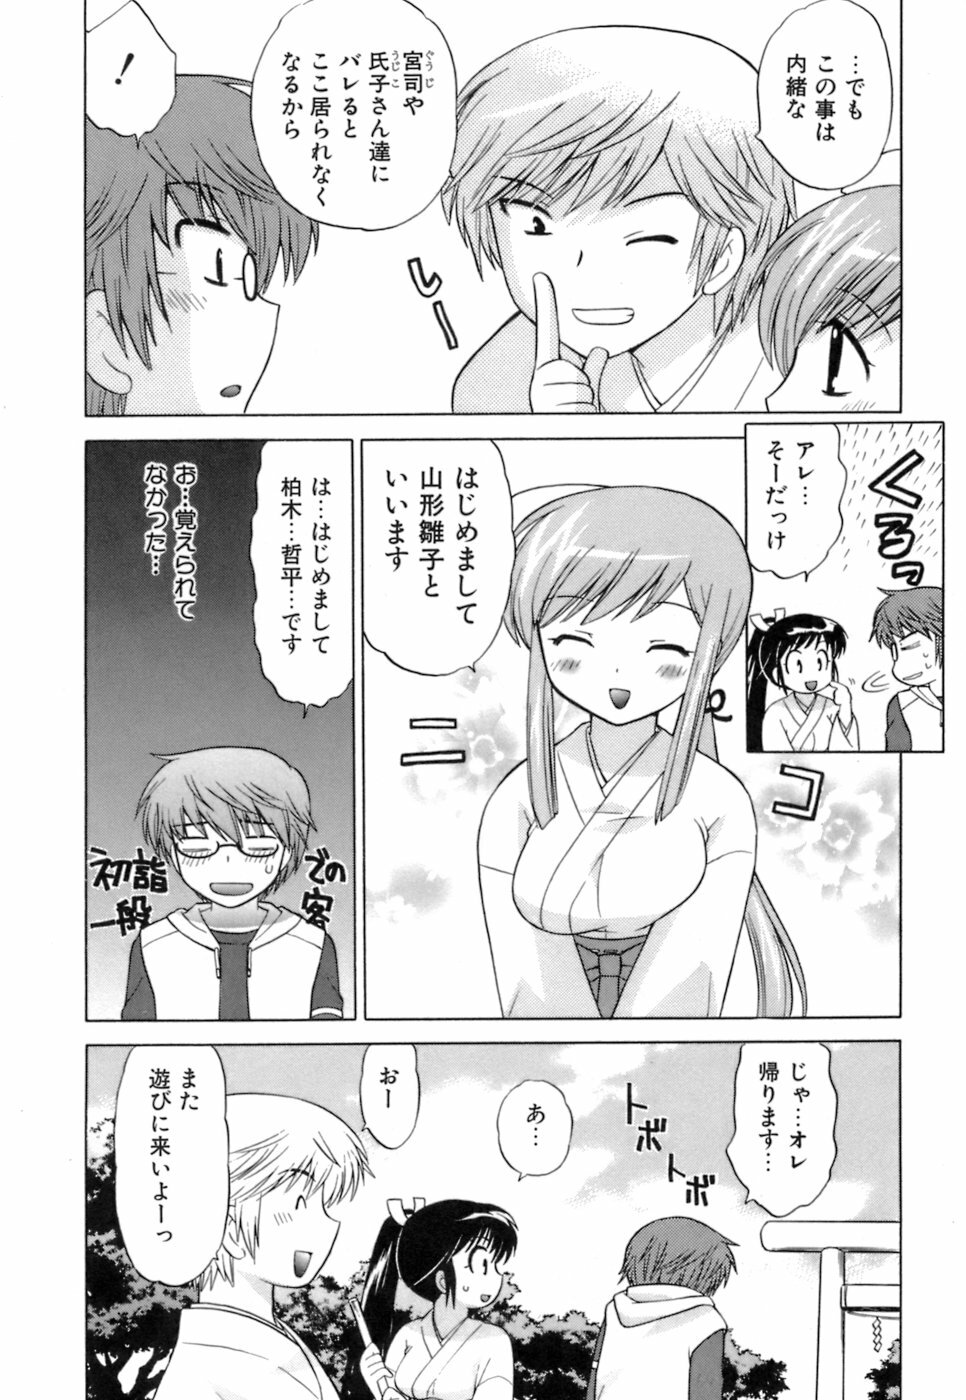 [Kotono Wakako] Miko Moe 1 page 36 full